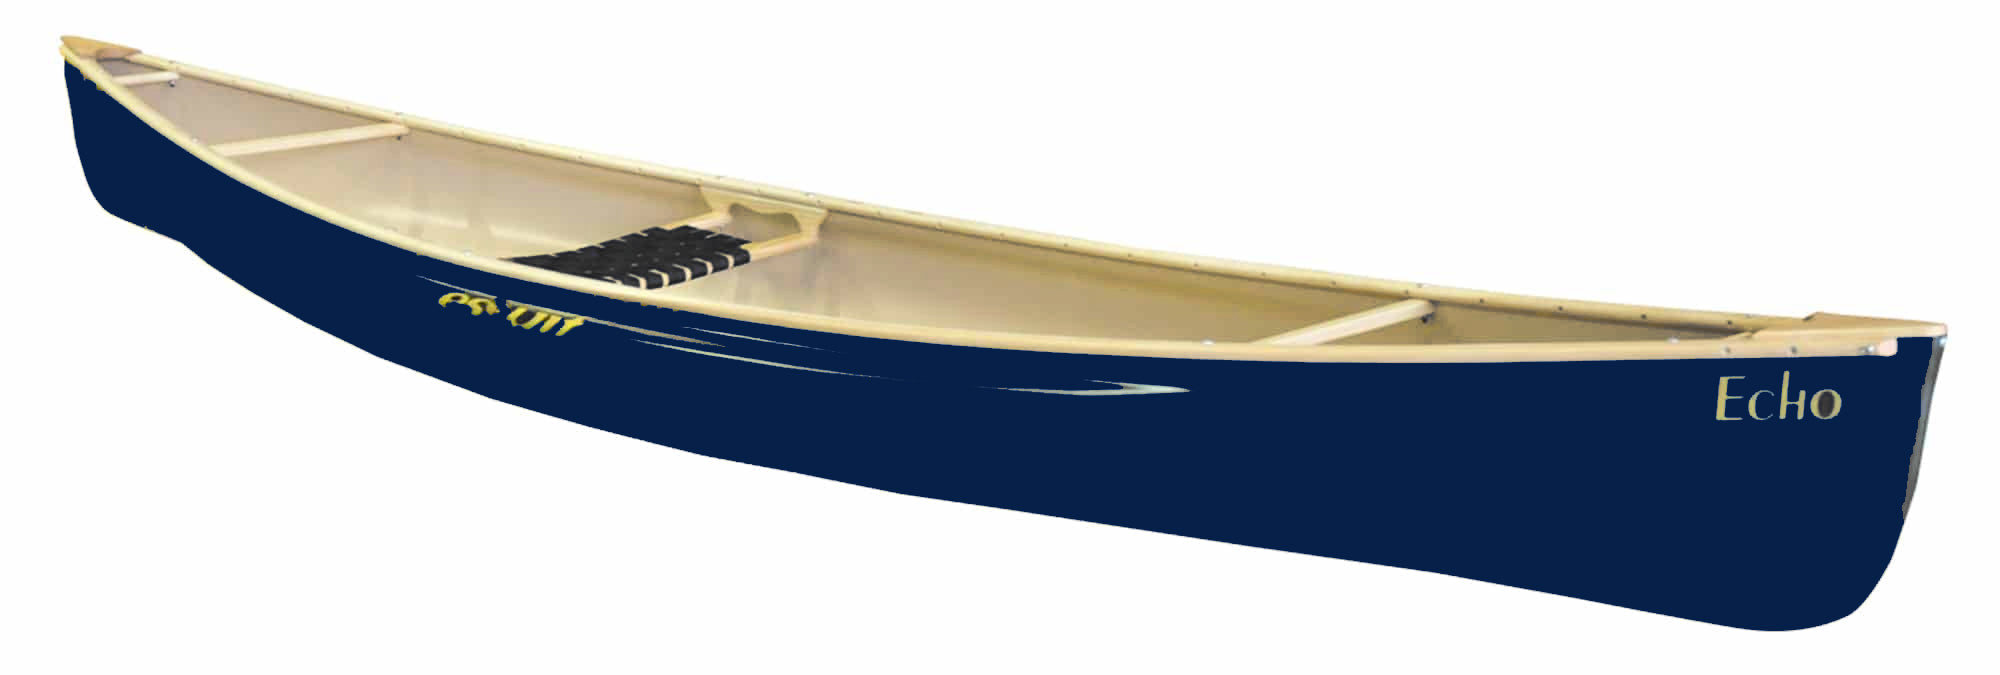 Used Kayak Lancaster County Marine, Inc. Ephrata, PA (717) 859-1121